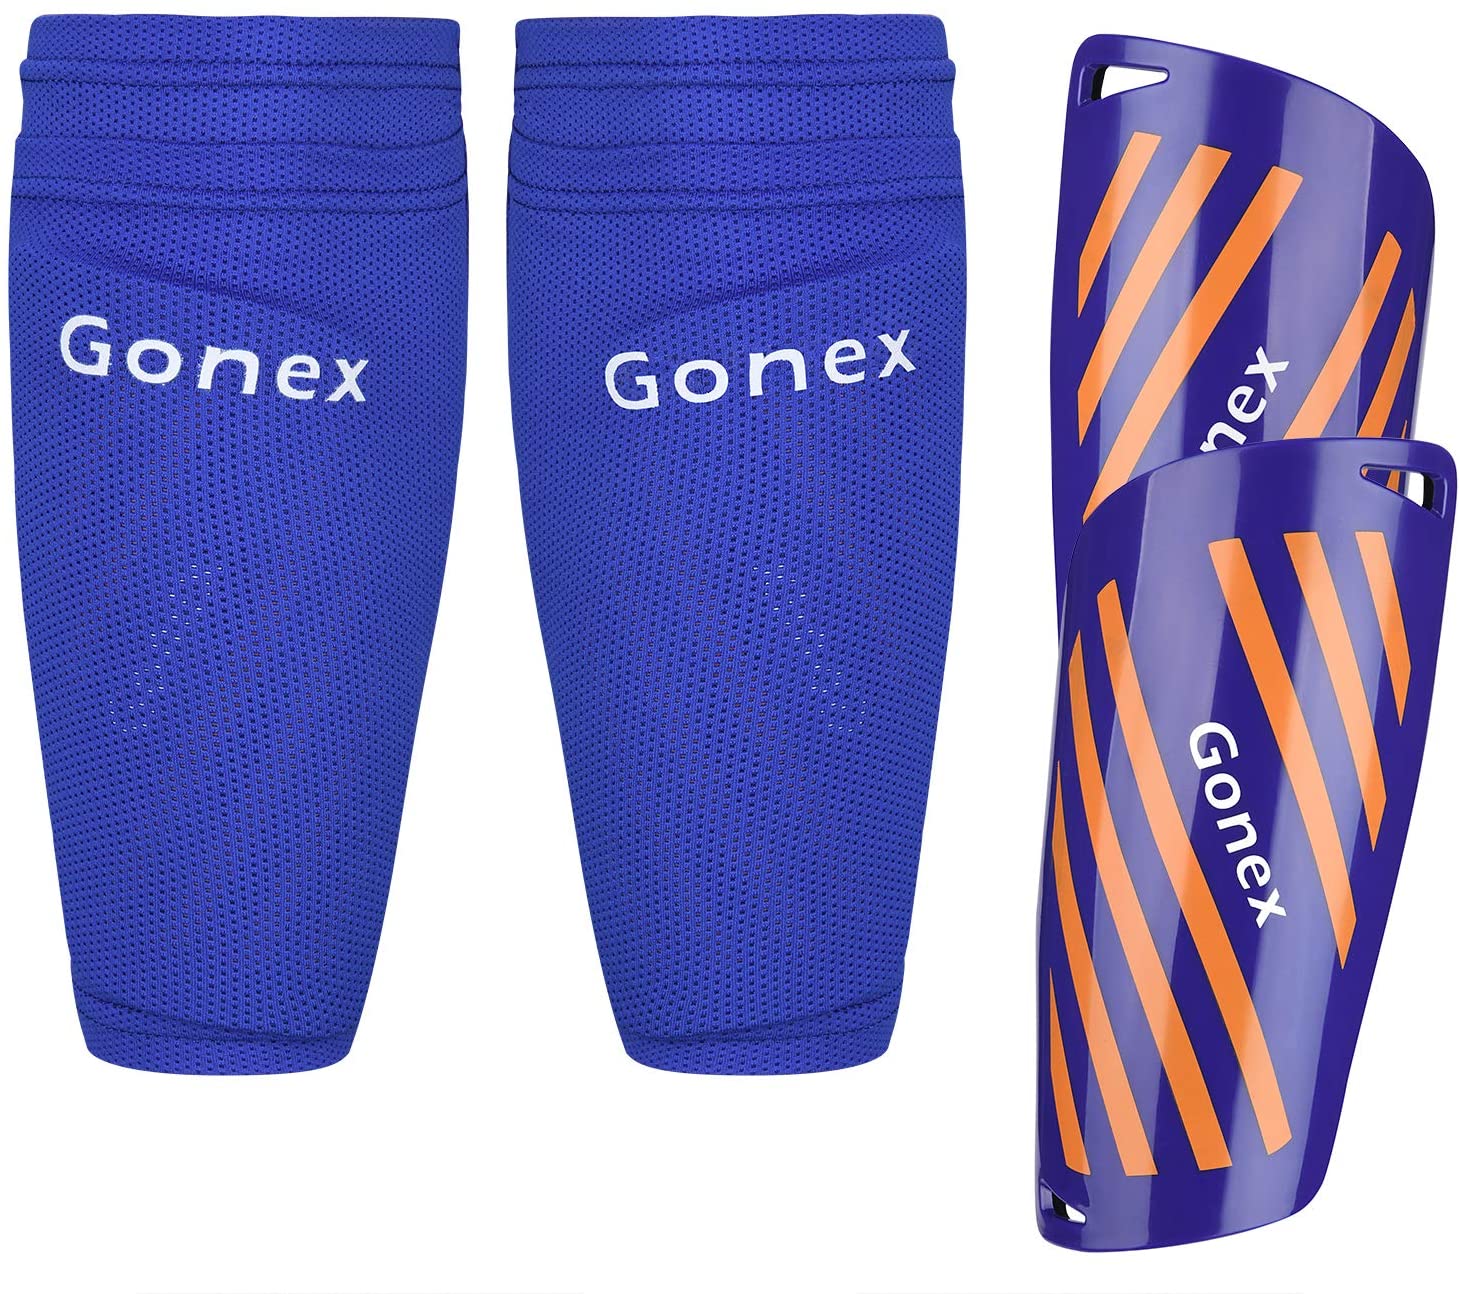 Gonex Sweat Reducing Calf Soccer Shin Guards